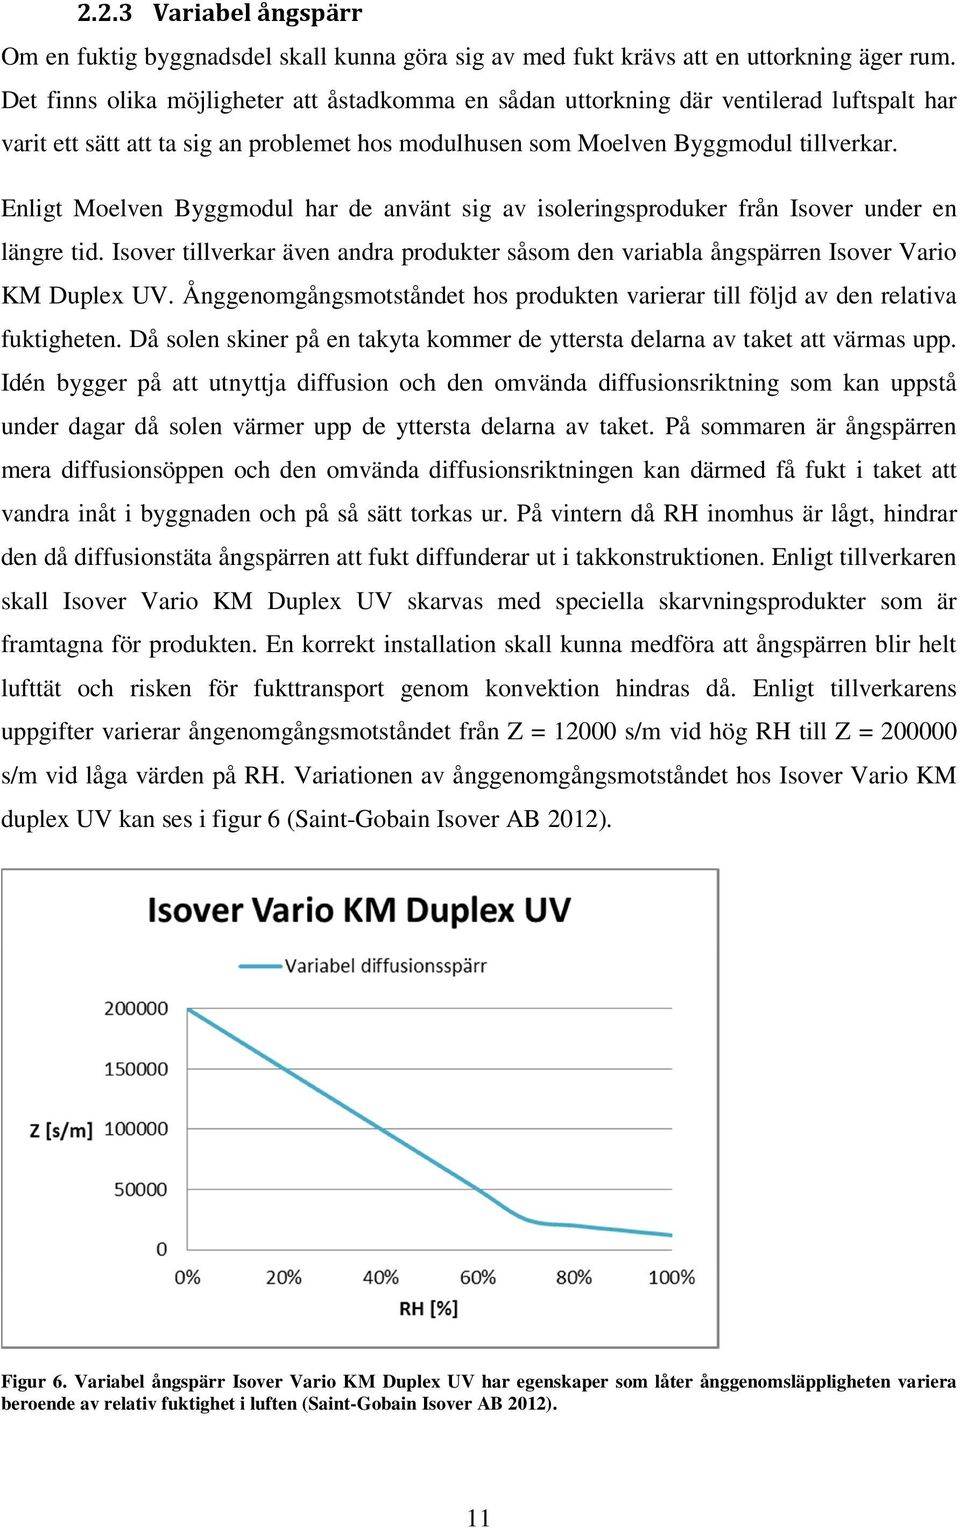 Enligt Moelven Byggmodul har de använt sig av isoleringsproduker från Isover under en längre tid. Isover tillverkar även andra produkter såsom den variabla ångspärren Isover Vario KM Duplex UV.